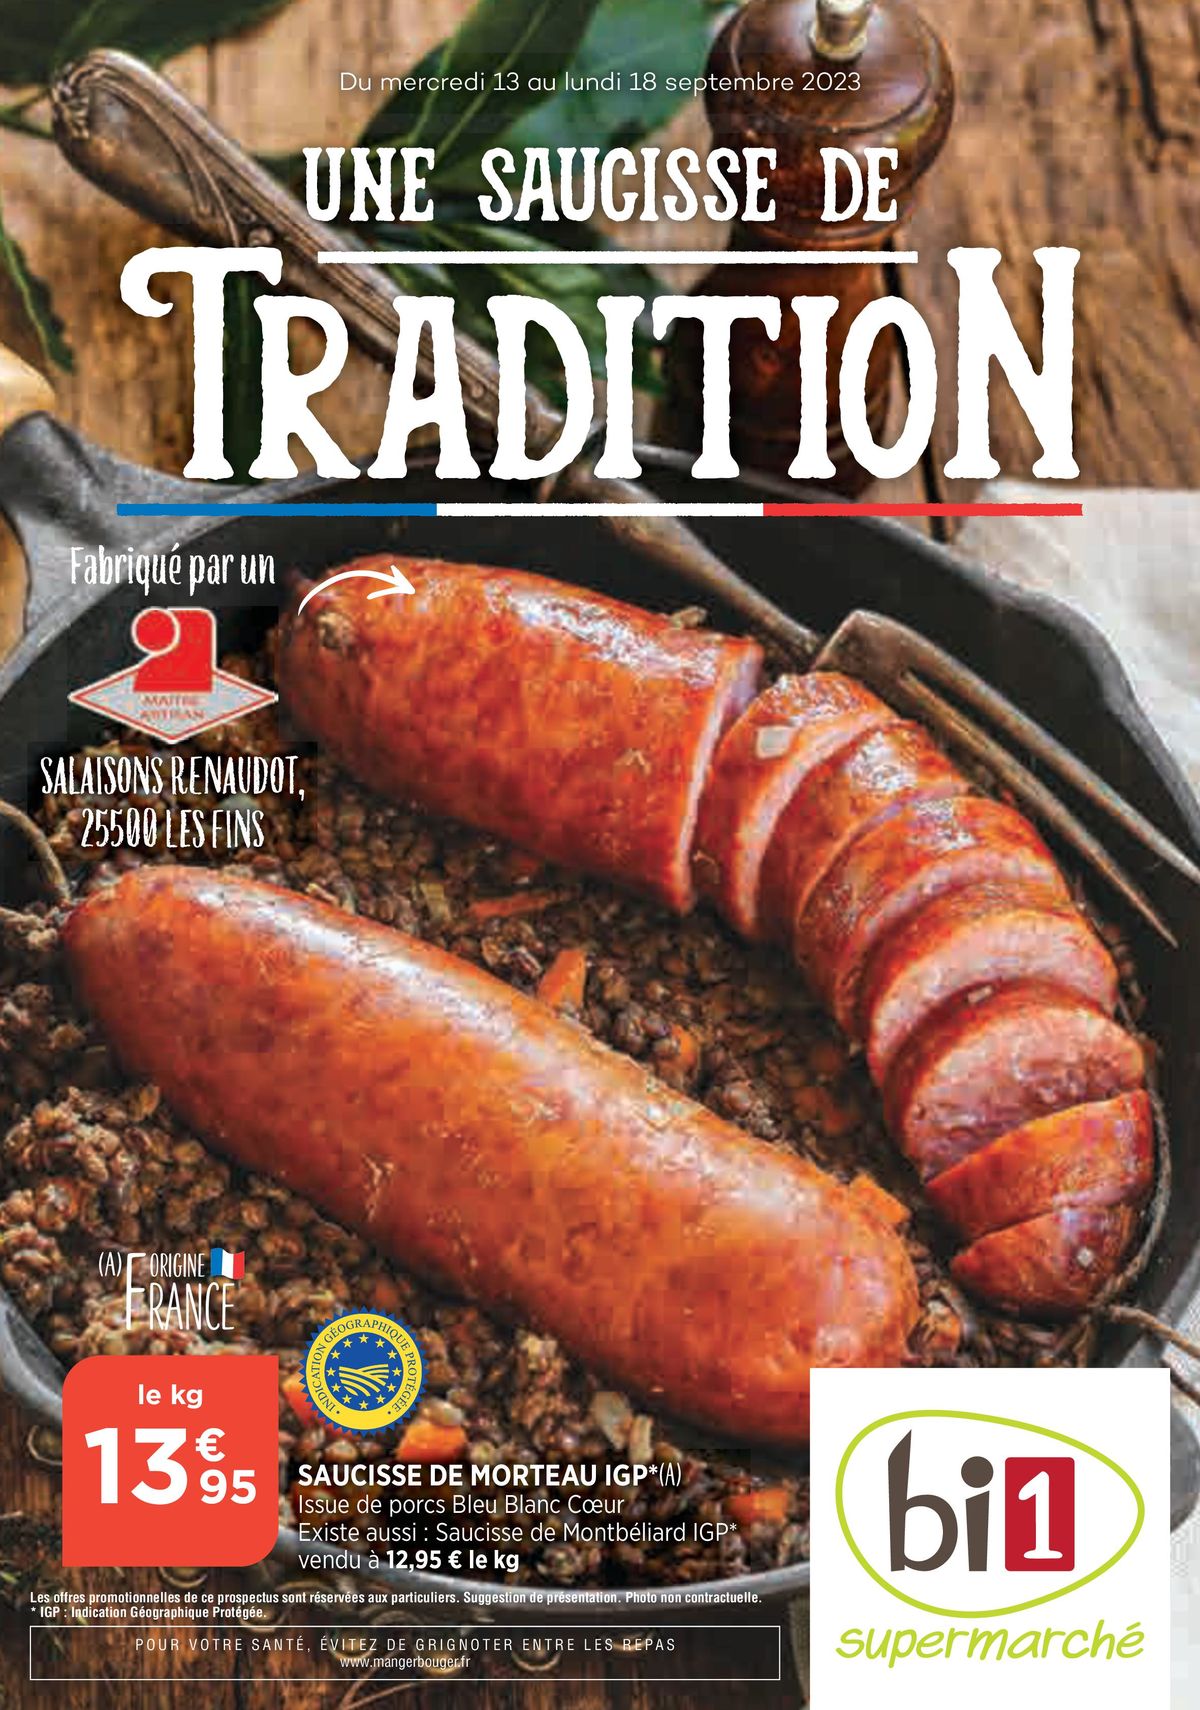 Catalogue Une saucisse de tradition, page 00001